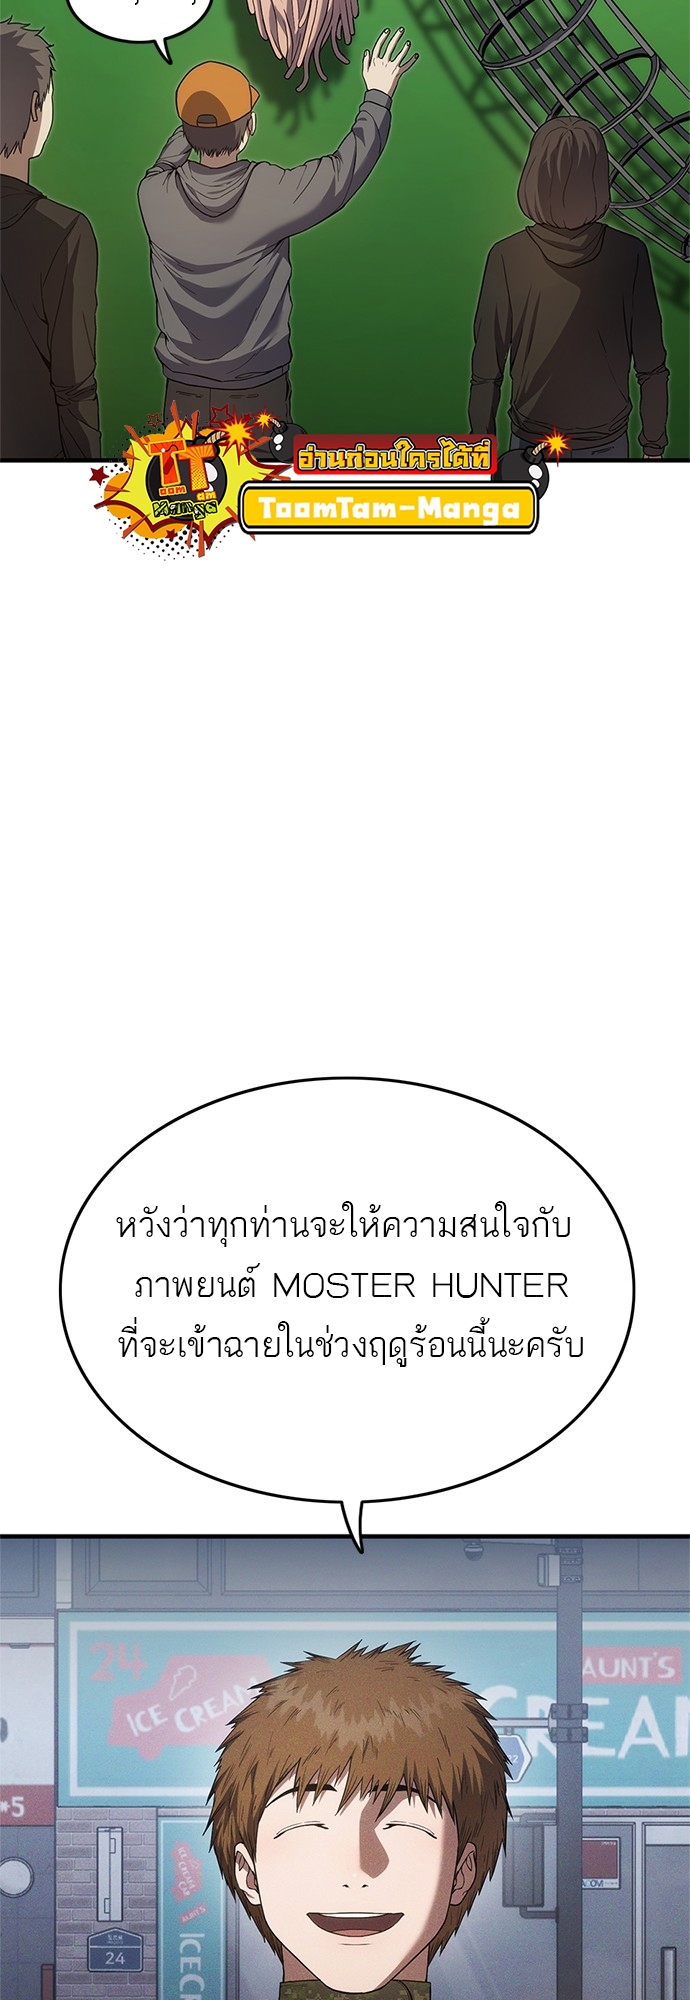 Monster Eater 7 19 03 25670092